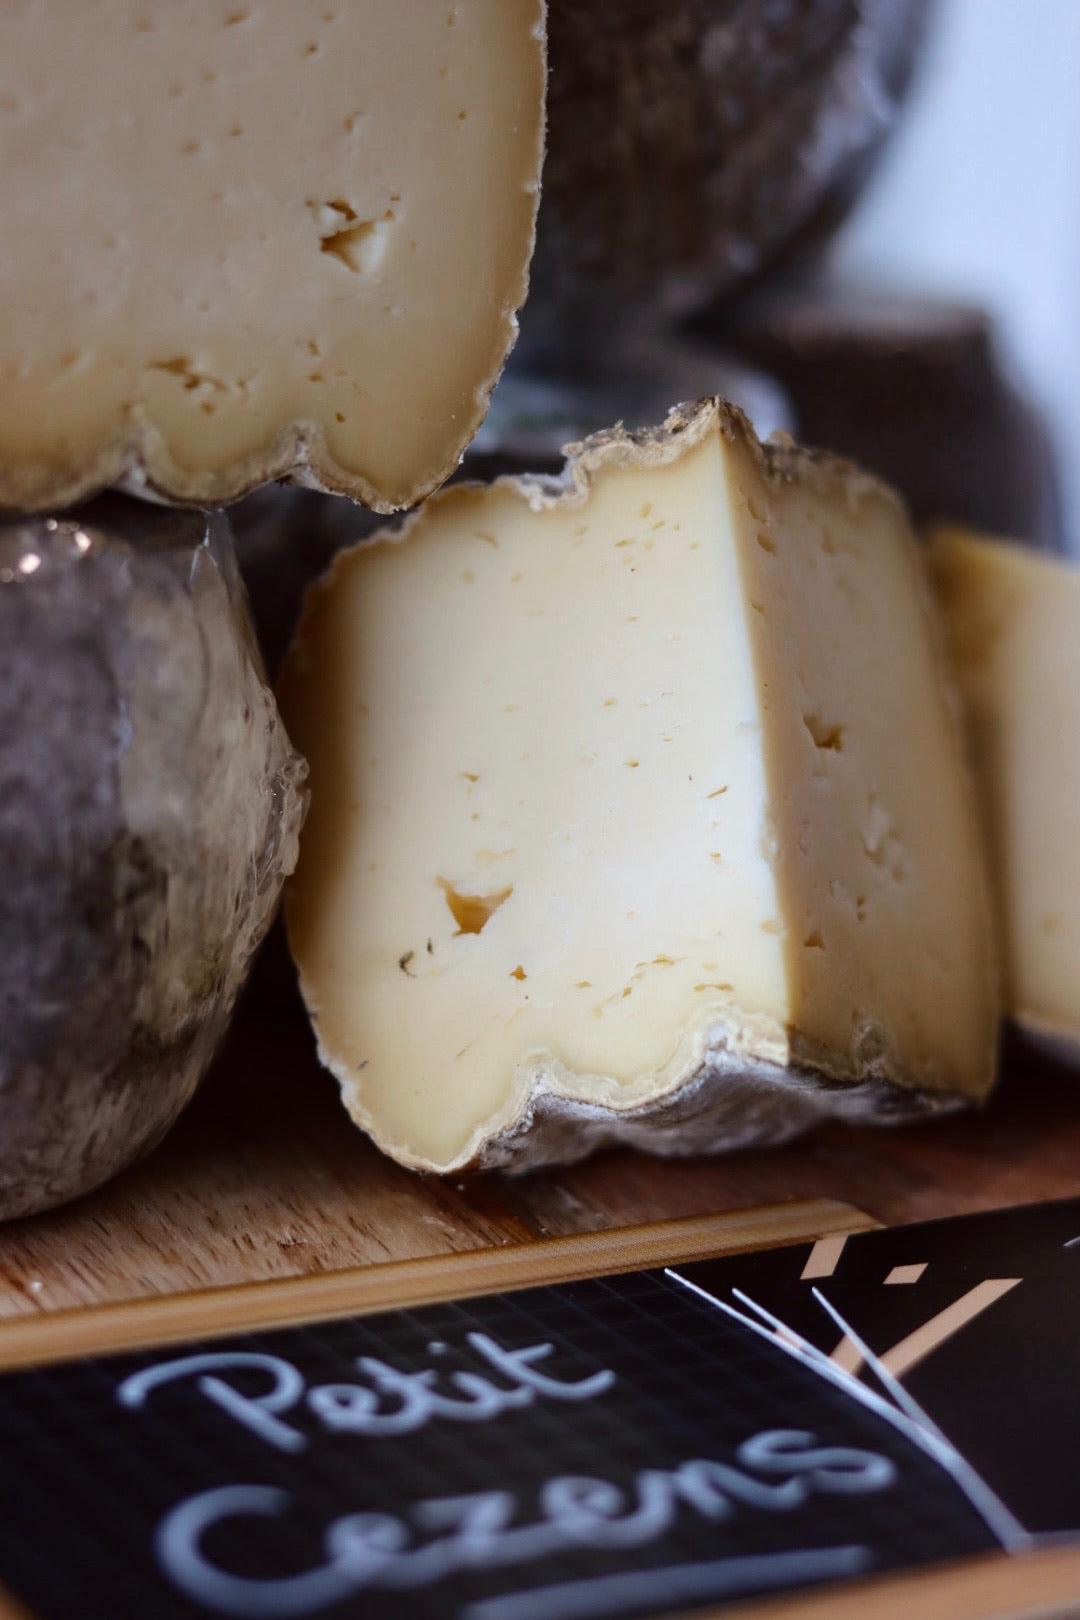 
                  
                    Le Petit Cézens est un fromage au lait cru de vache, fabriqué à la main selon les méthodes traditionnelles de la région Auvergne. Sa croûte naturelle et sa pâte moelleuse cachent des arômes subtils et délicats, avec des notes de noisette et de champignon. Ce fromage de terroir est parfait pour une dégustation en fin de repas ou pour agrémenter vos plateaux de fromages. Découvrez la richesse culinaire de l'Auvergne avec le Petit Cézens, un produit artisanal de qualité, fabriqué avec amour et passion.
                  
                